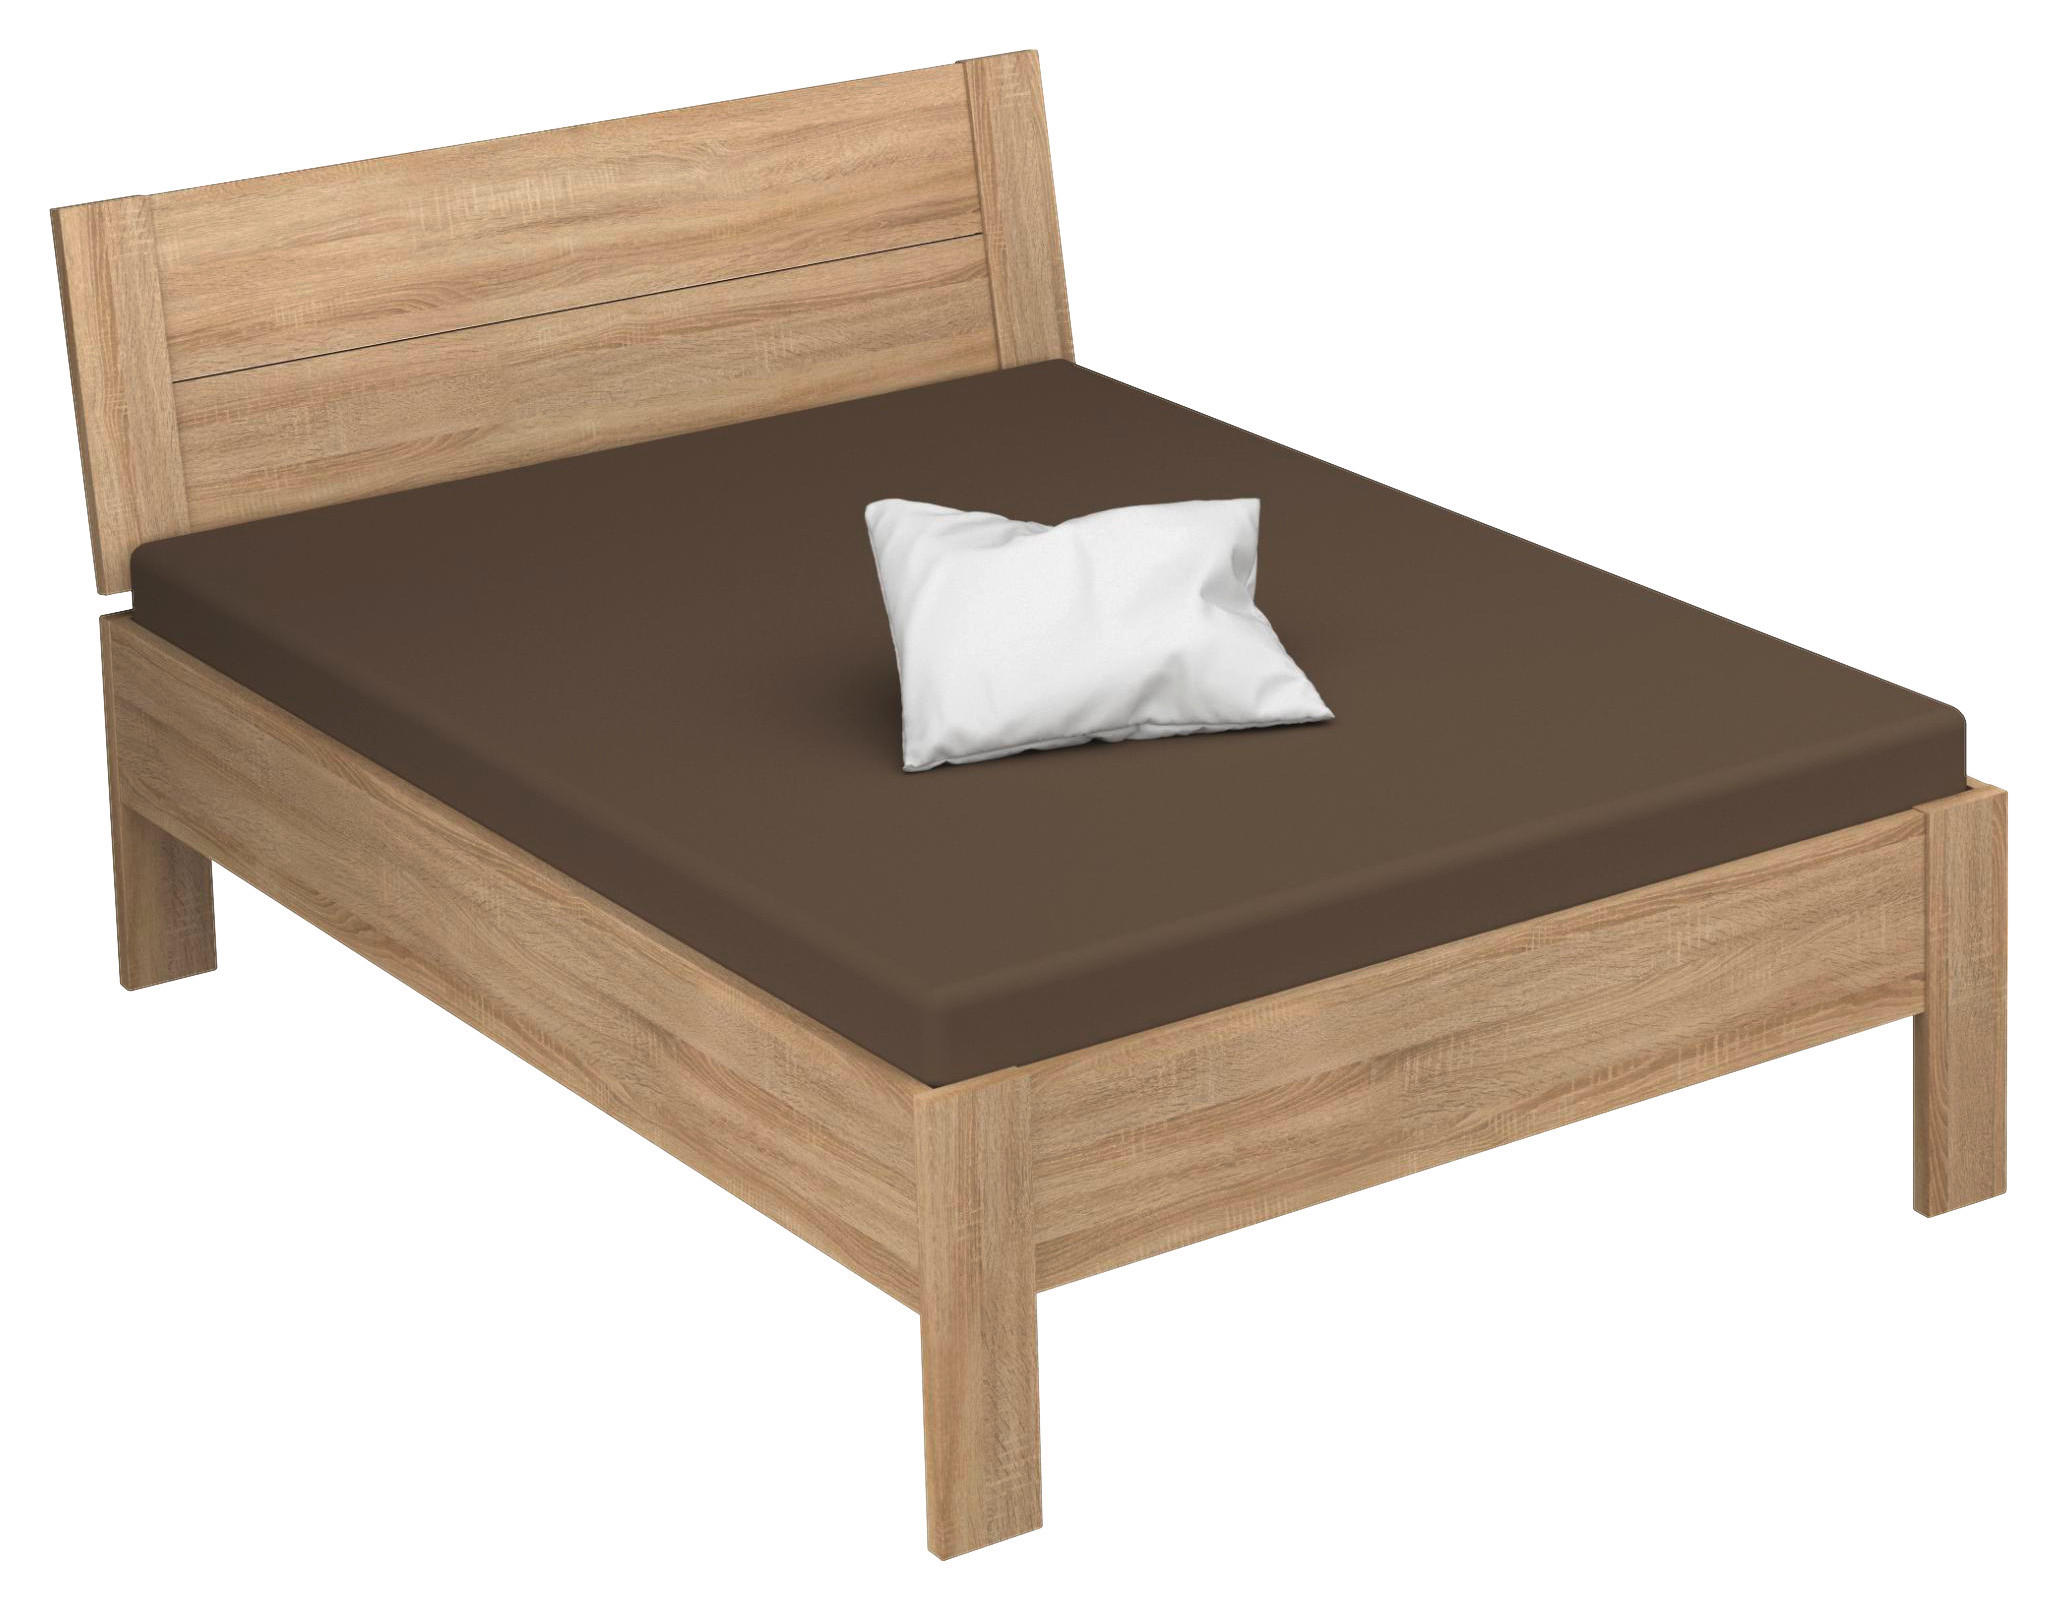 BETT ADITIO BEDS 120/200 cm Sonoma Eiche  - Sonoma Eiche, Design (120/200cm) - Xora